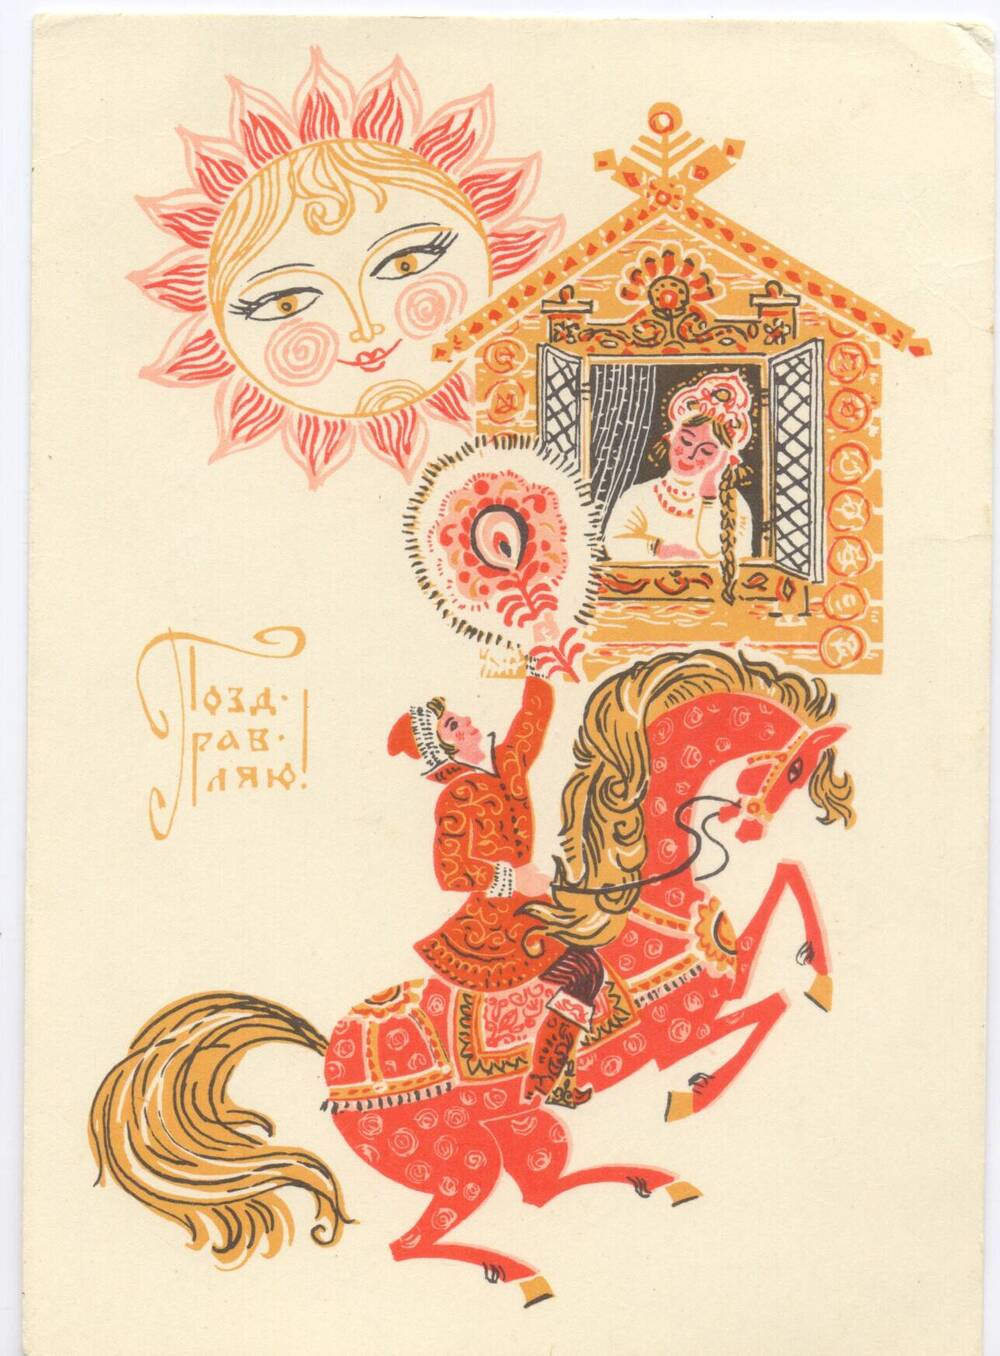 Карточка почтовая художественная поздравительная маркированная «Поздравляю!»